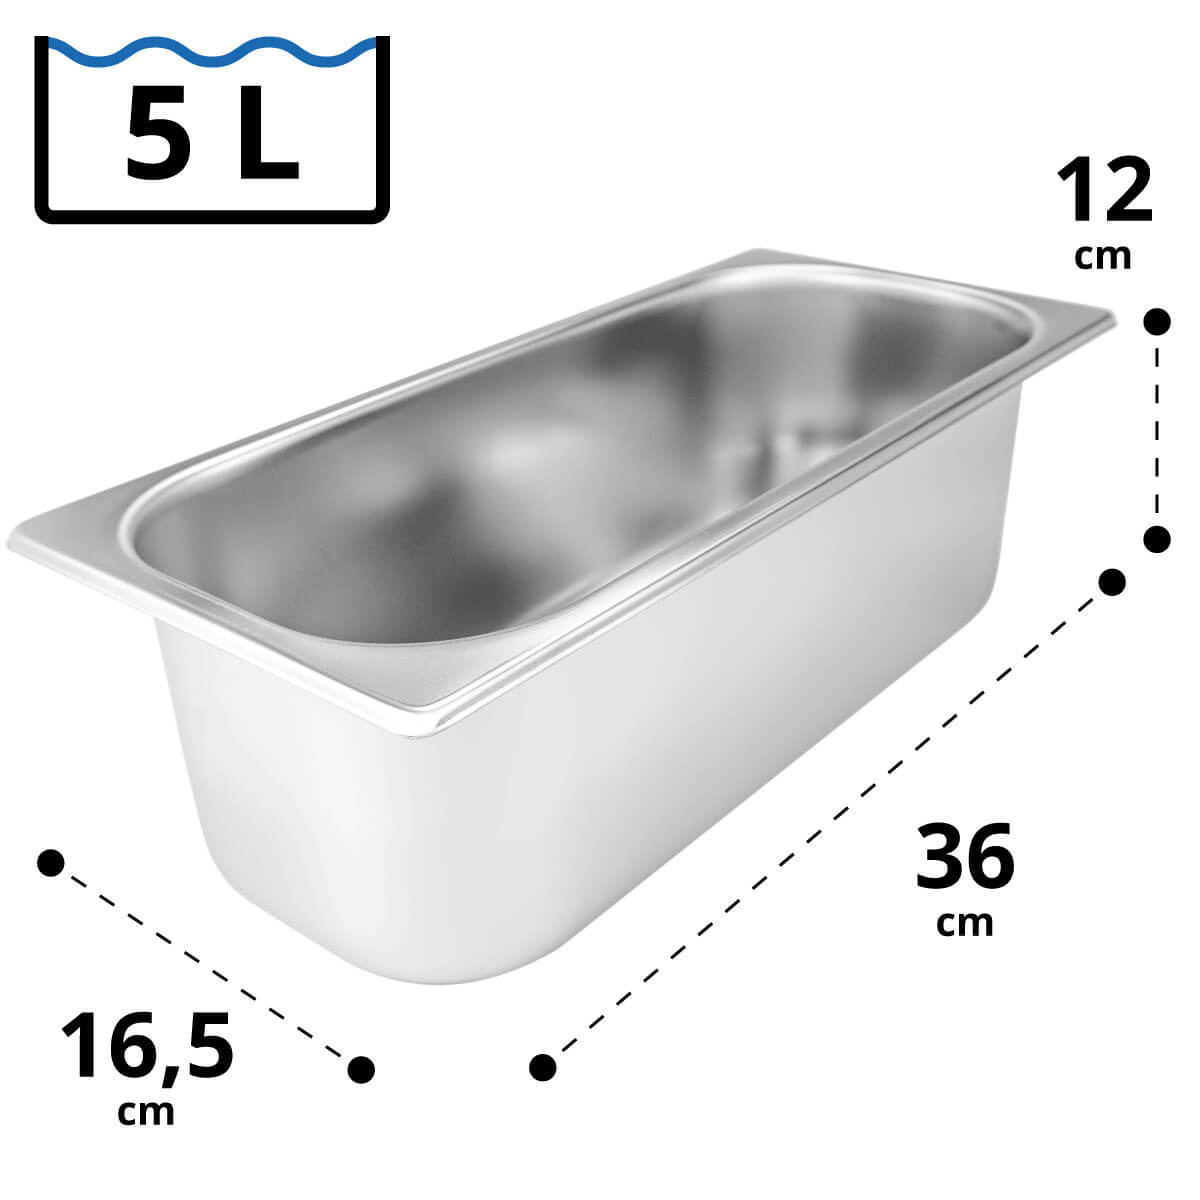 5 Liter Eisbehälter 36 x 16,5 x 12 cm